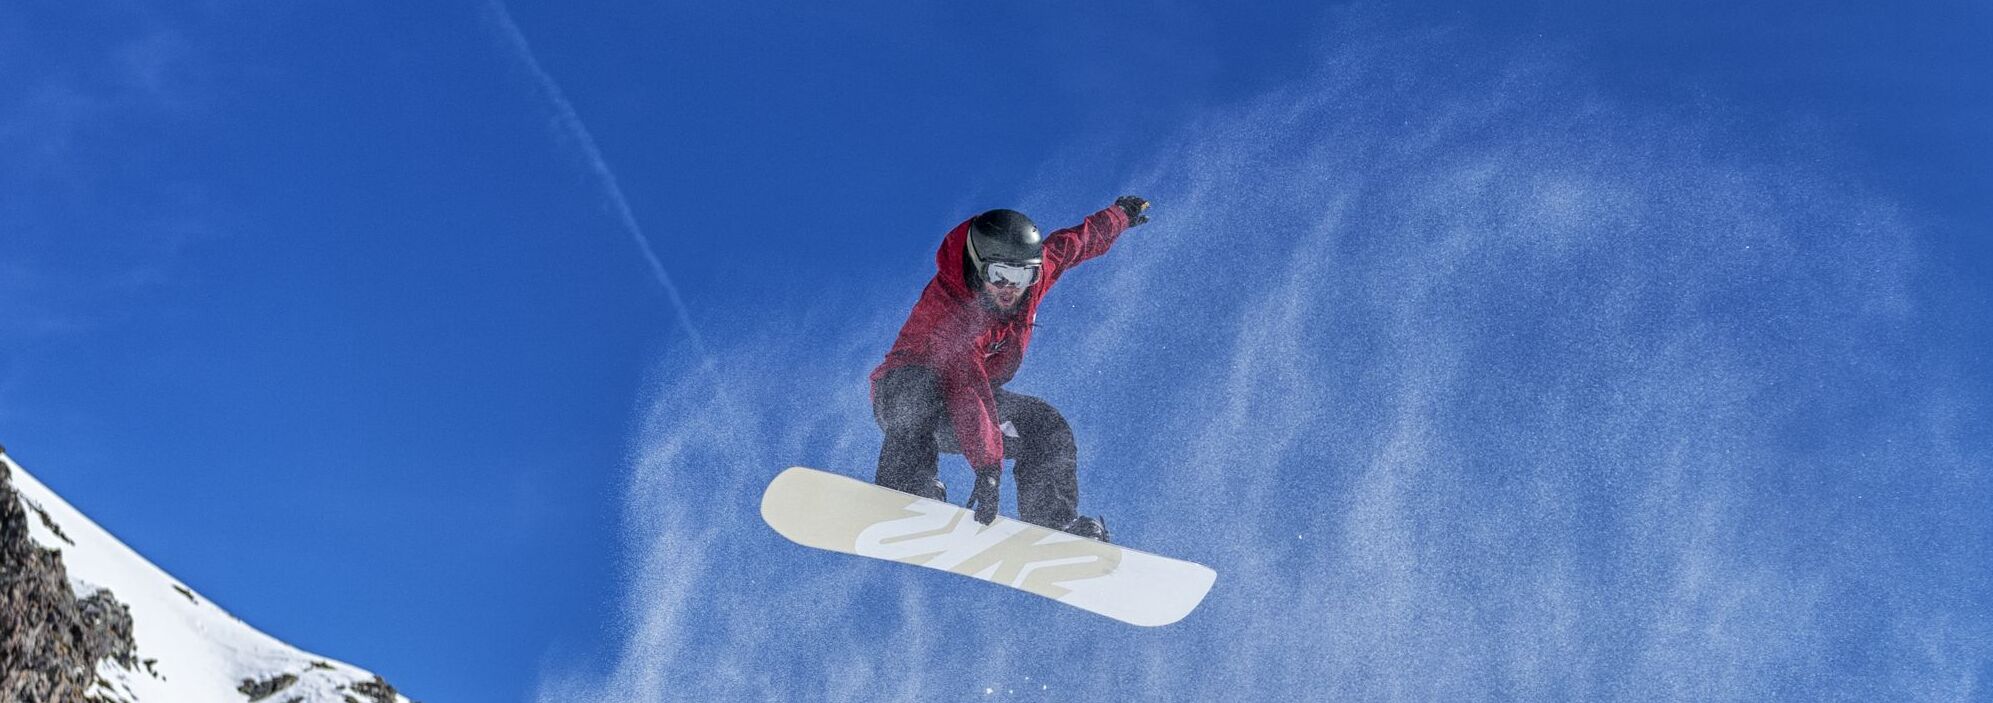 Snowboard Jump im Skigebiet Klosters / Davos